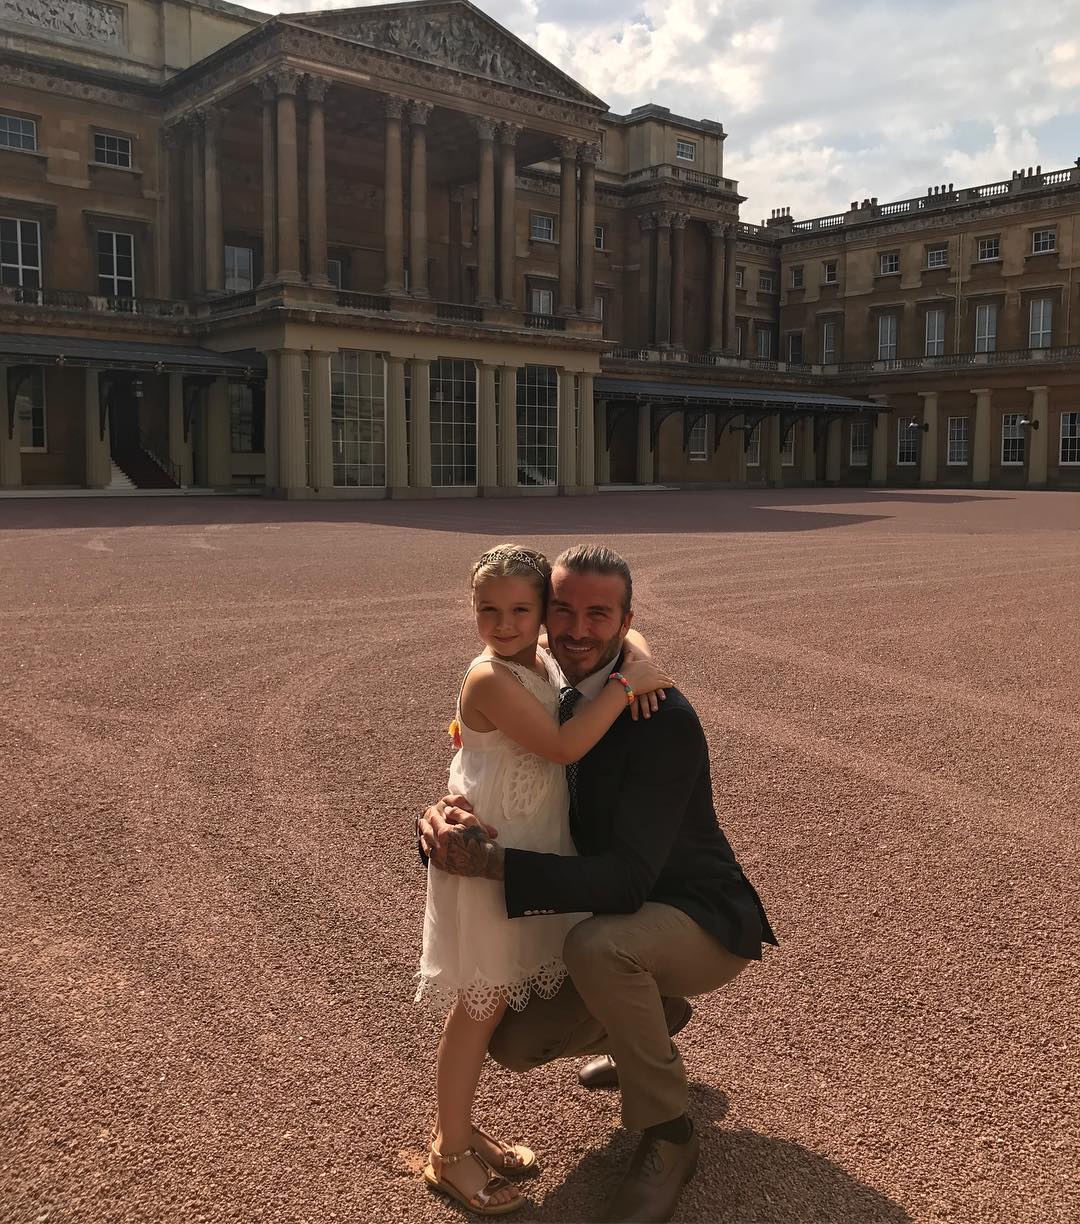 La filla dels Beckham celebra l’aniversari... al Palau de Buckingham!